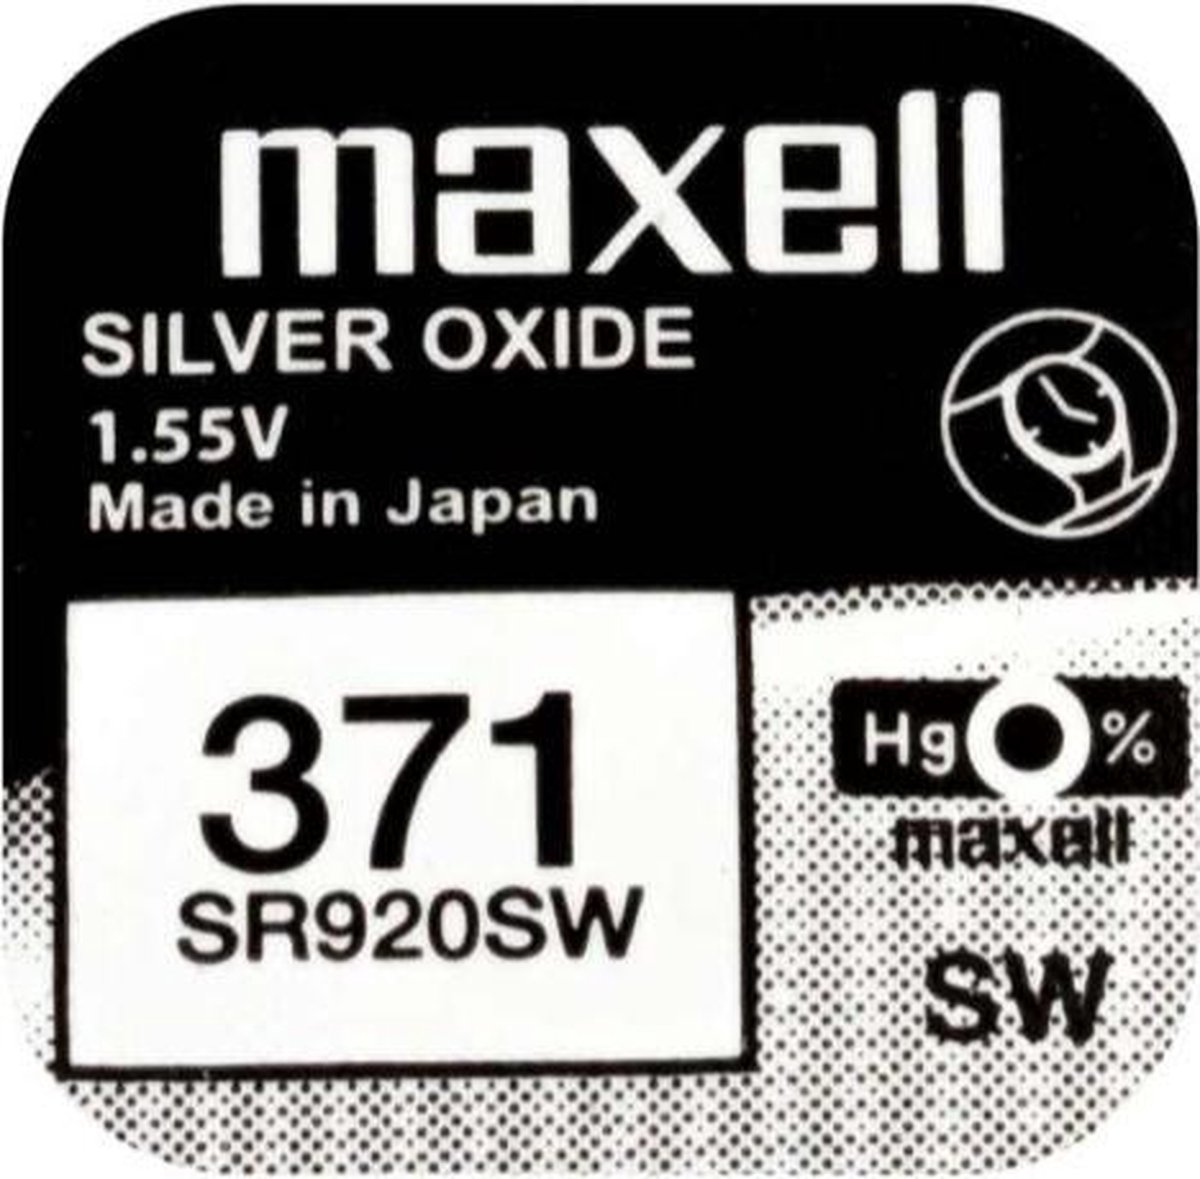 Maxell 371 / SR920SW zilveroxide knoopcel horlogebatterij 3 (drie) stuks - Maxell